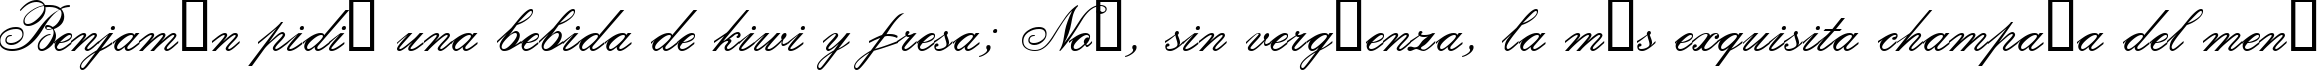 Пример написания шрифтом Calligraphia Two текста на испанском